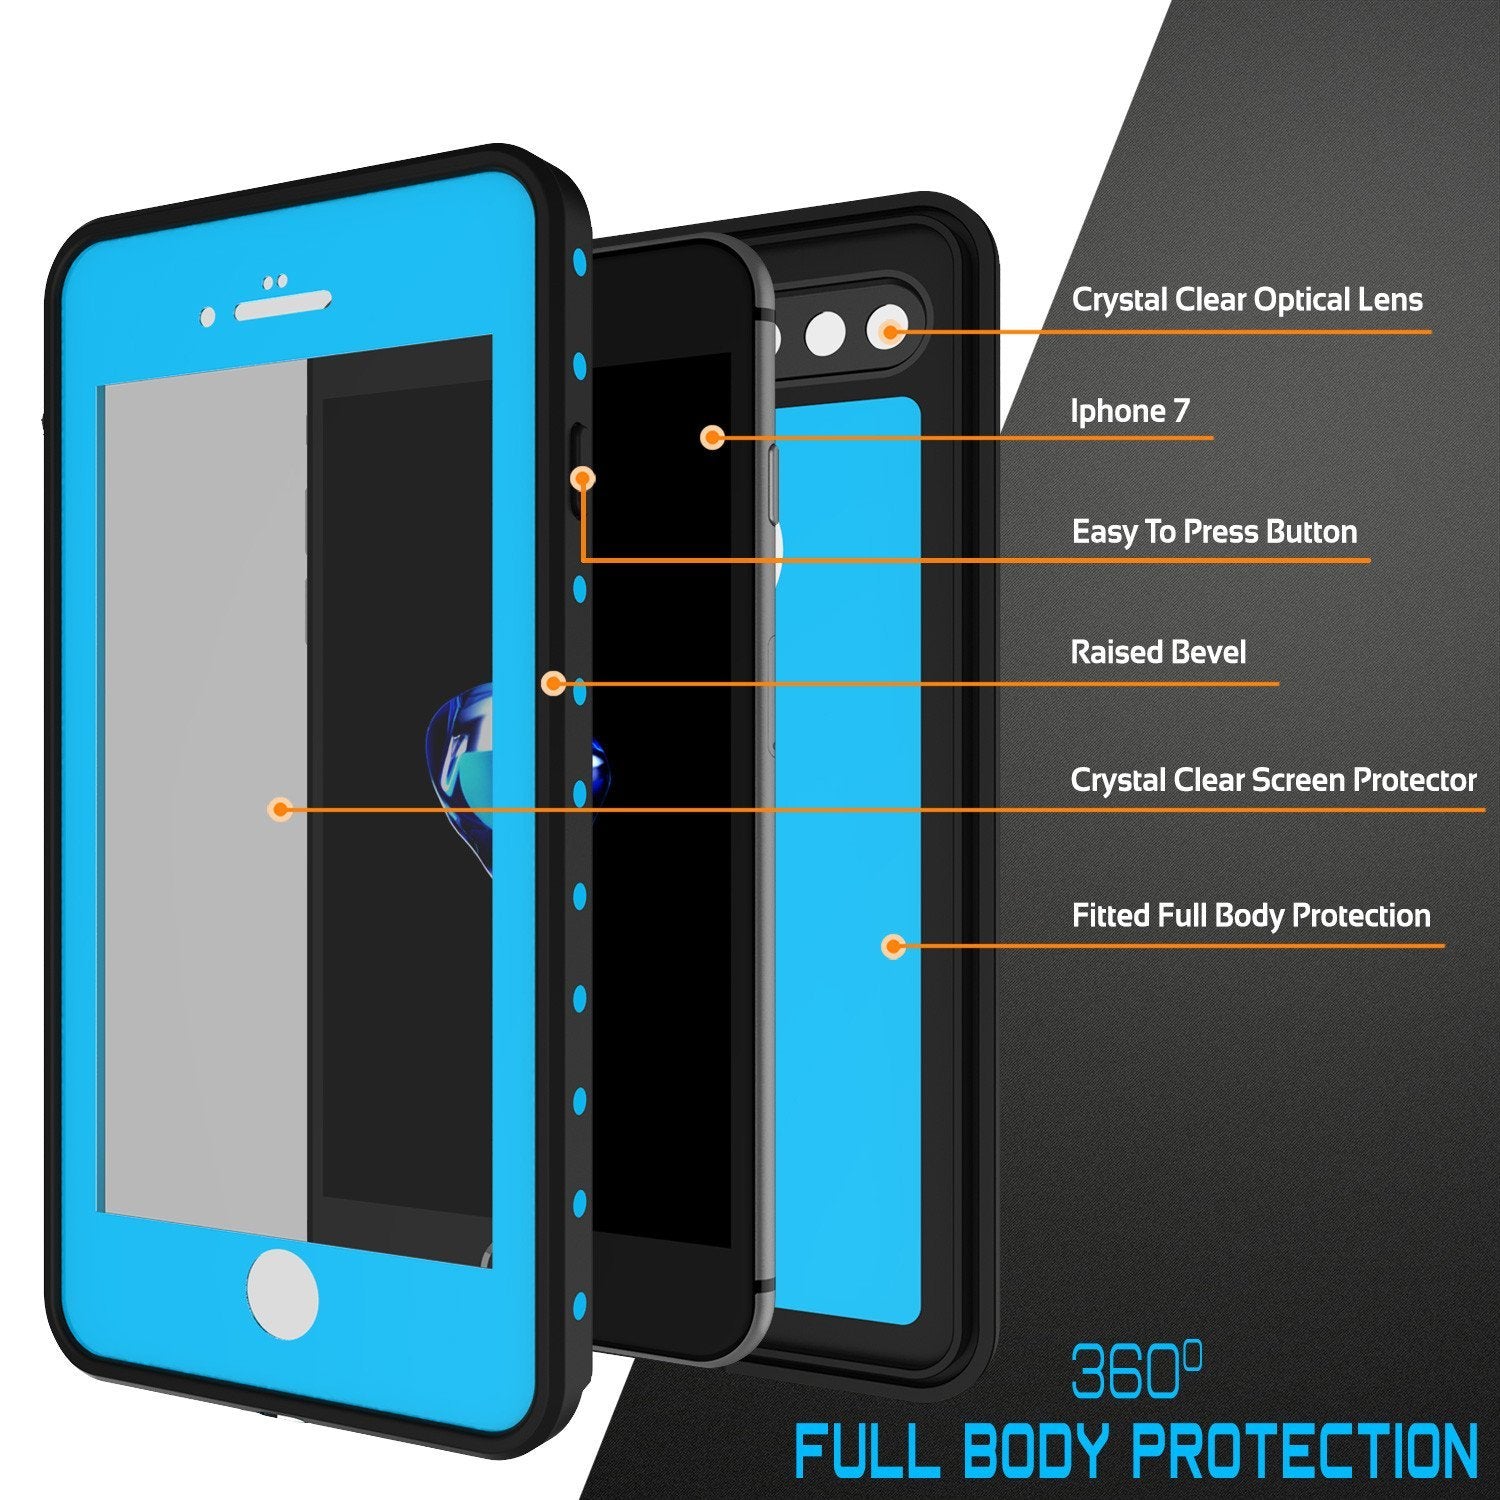 iPhone 8+ Plus Waterproof IP68 Case, Punkcase [Light Blue] [StudStar Series] [Slim Fit] [Dirtproof]